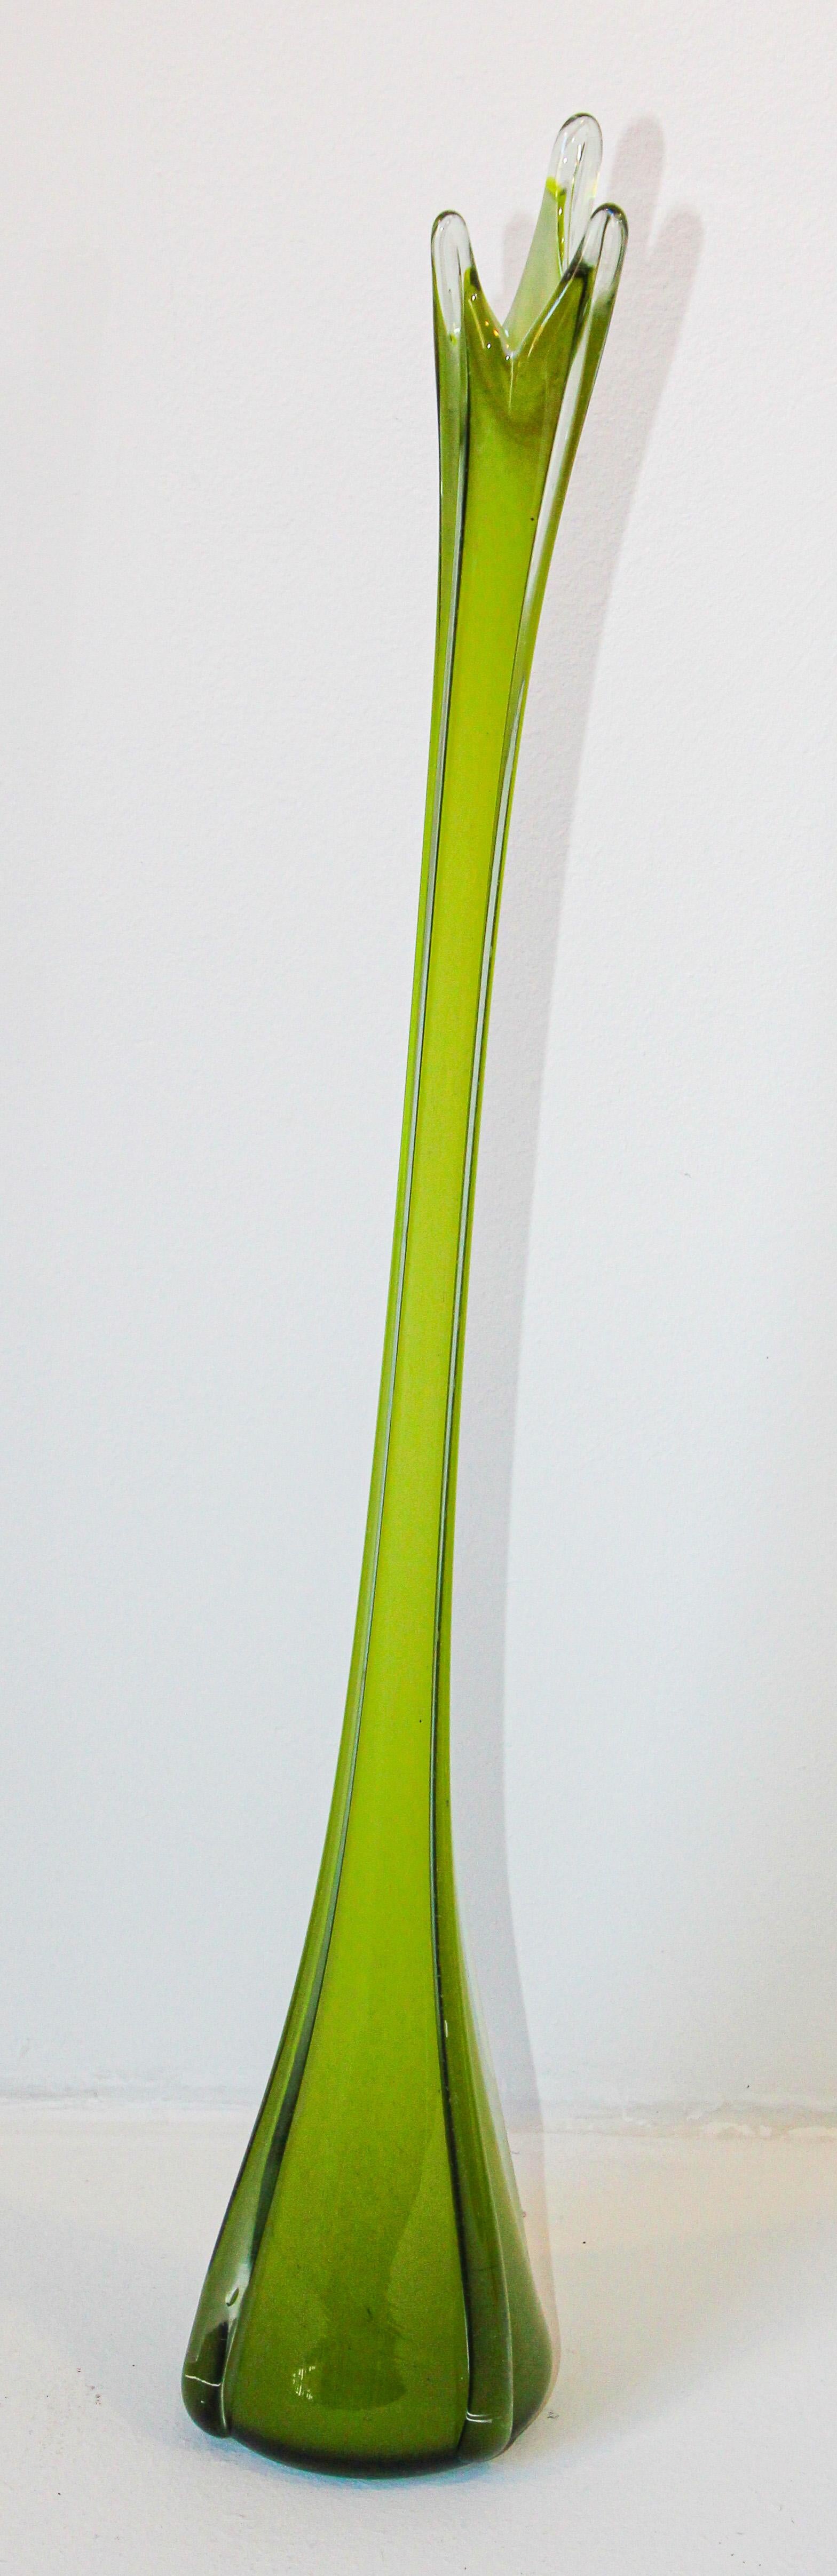 Grand vase balancé en verre d'art décoratif lourd et épais en vert émeraude de Murano, Italie, années 1960.
Mesures : 42 pouces de hauteur x 8 pouces de diamètre à la base.
Verre d'art soufflé à la main de Murano, vert, de collection, datant du